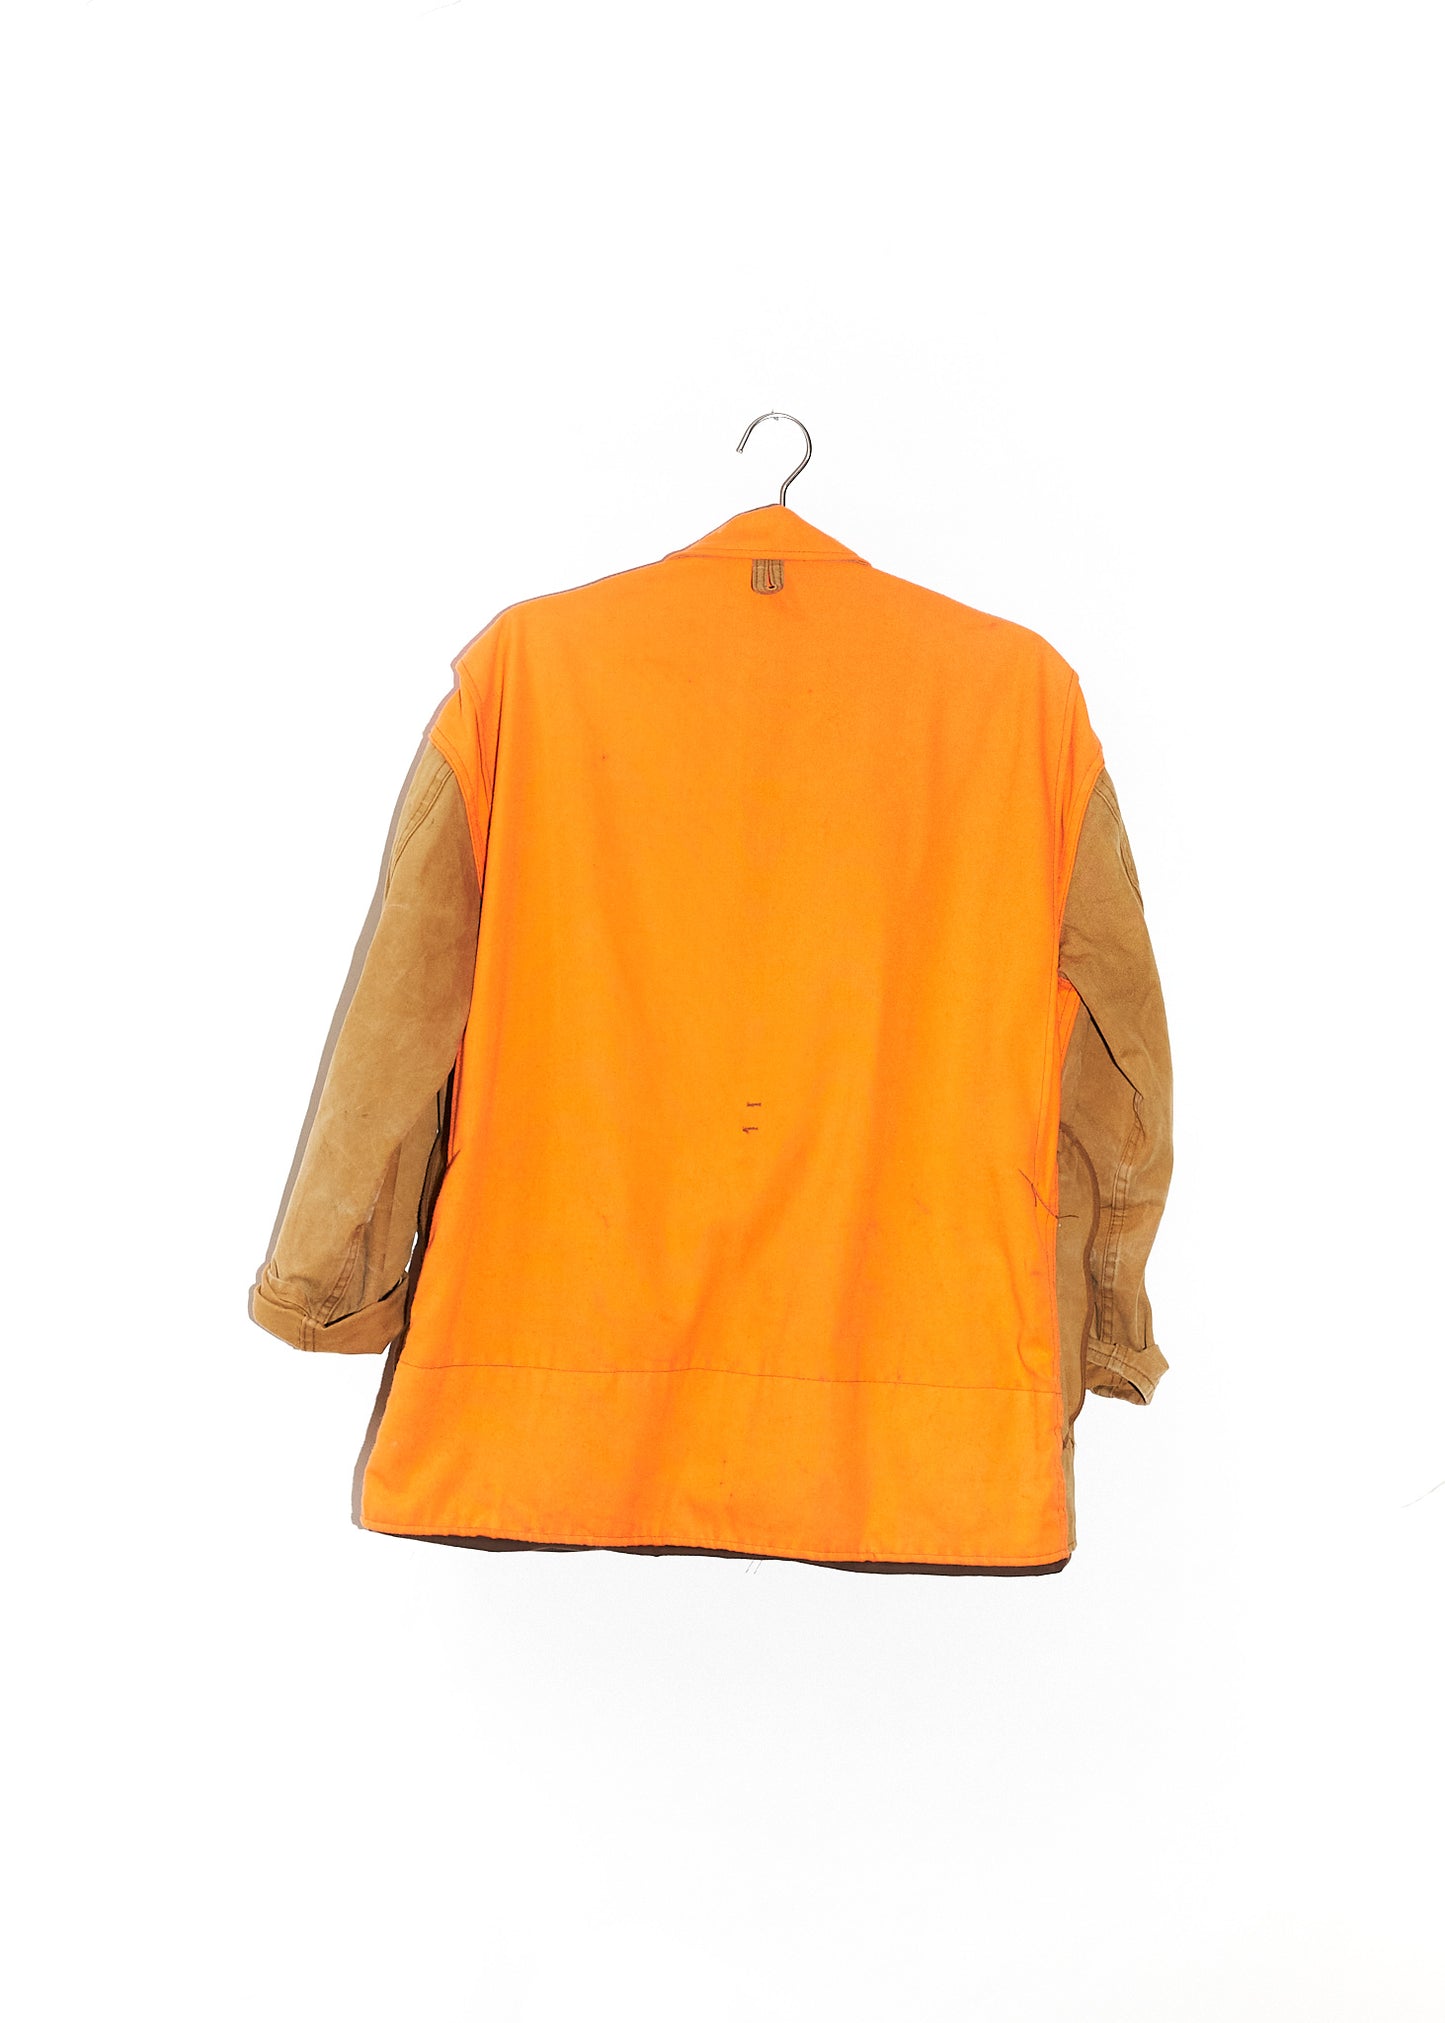 Orange And Brown Jacket